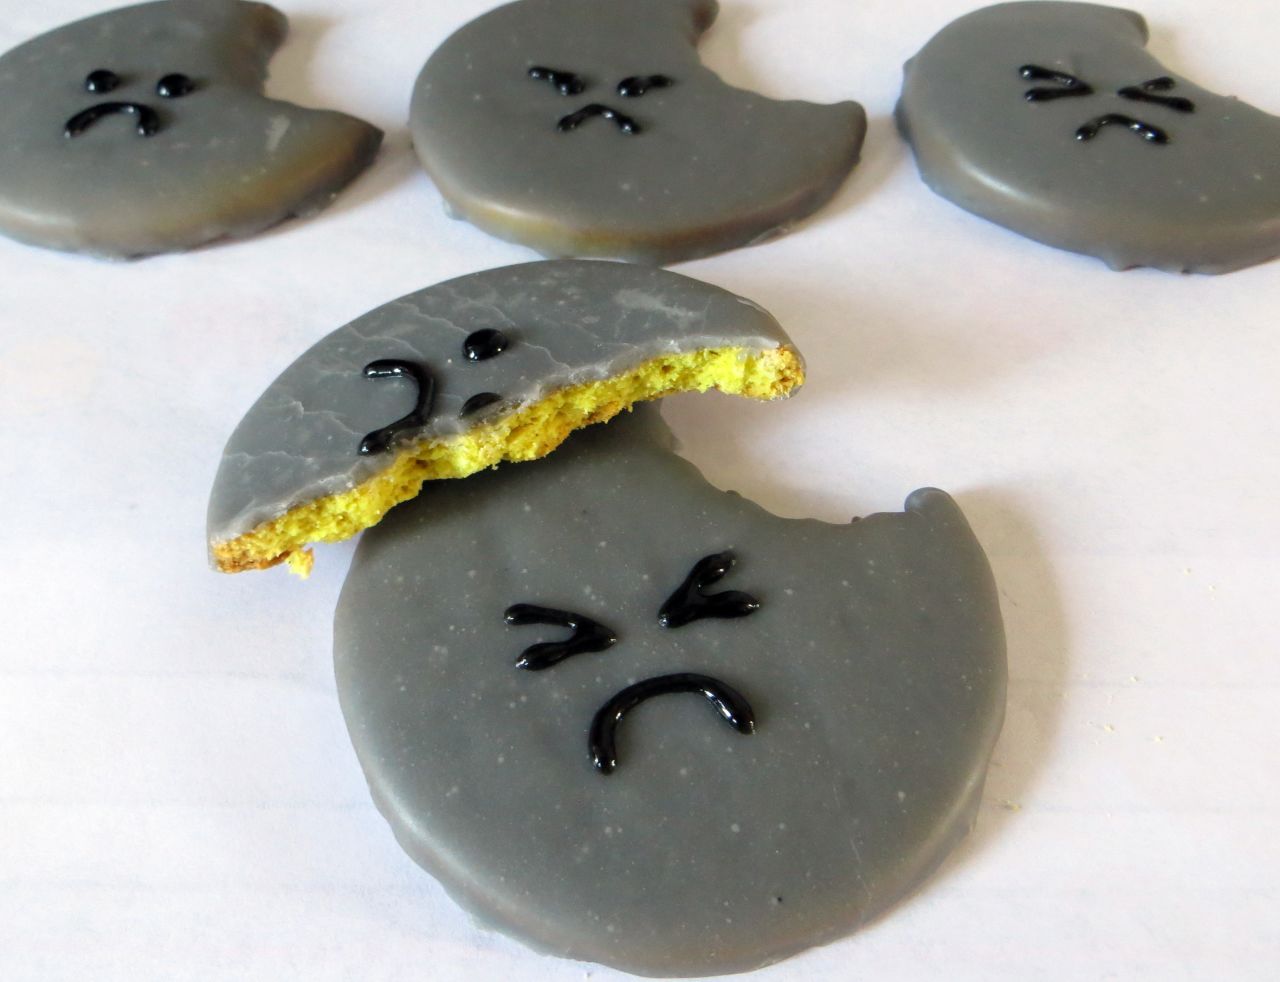 "La vida se llevó un pedazo de mí", es el mensaje de estas galletas hechas por Laura Fortune.